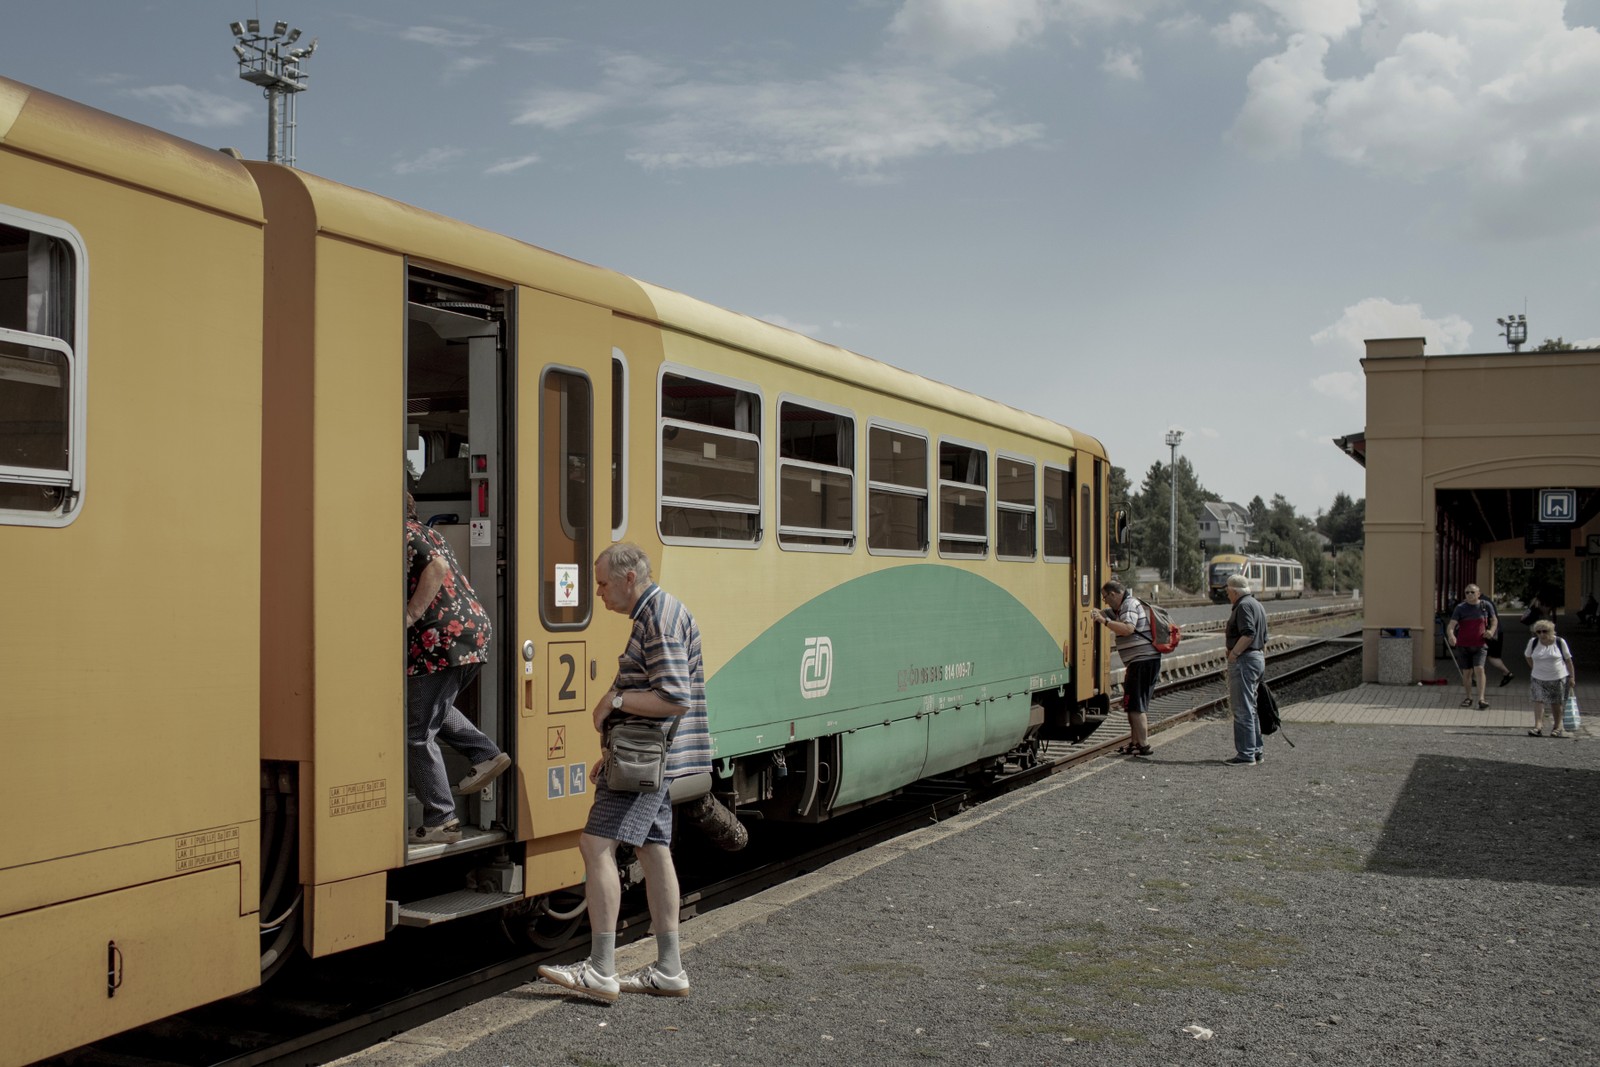 Passageiros ferroviários embarcam em um trem na estação de Rumburk, República Tcheca — Foto: Emile Ducke/The New York Times